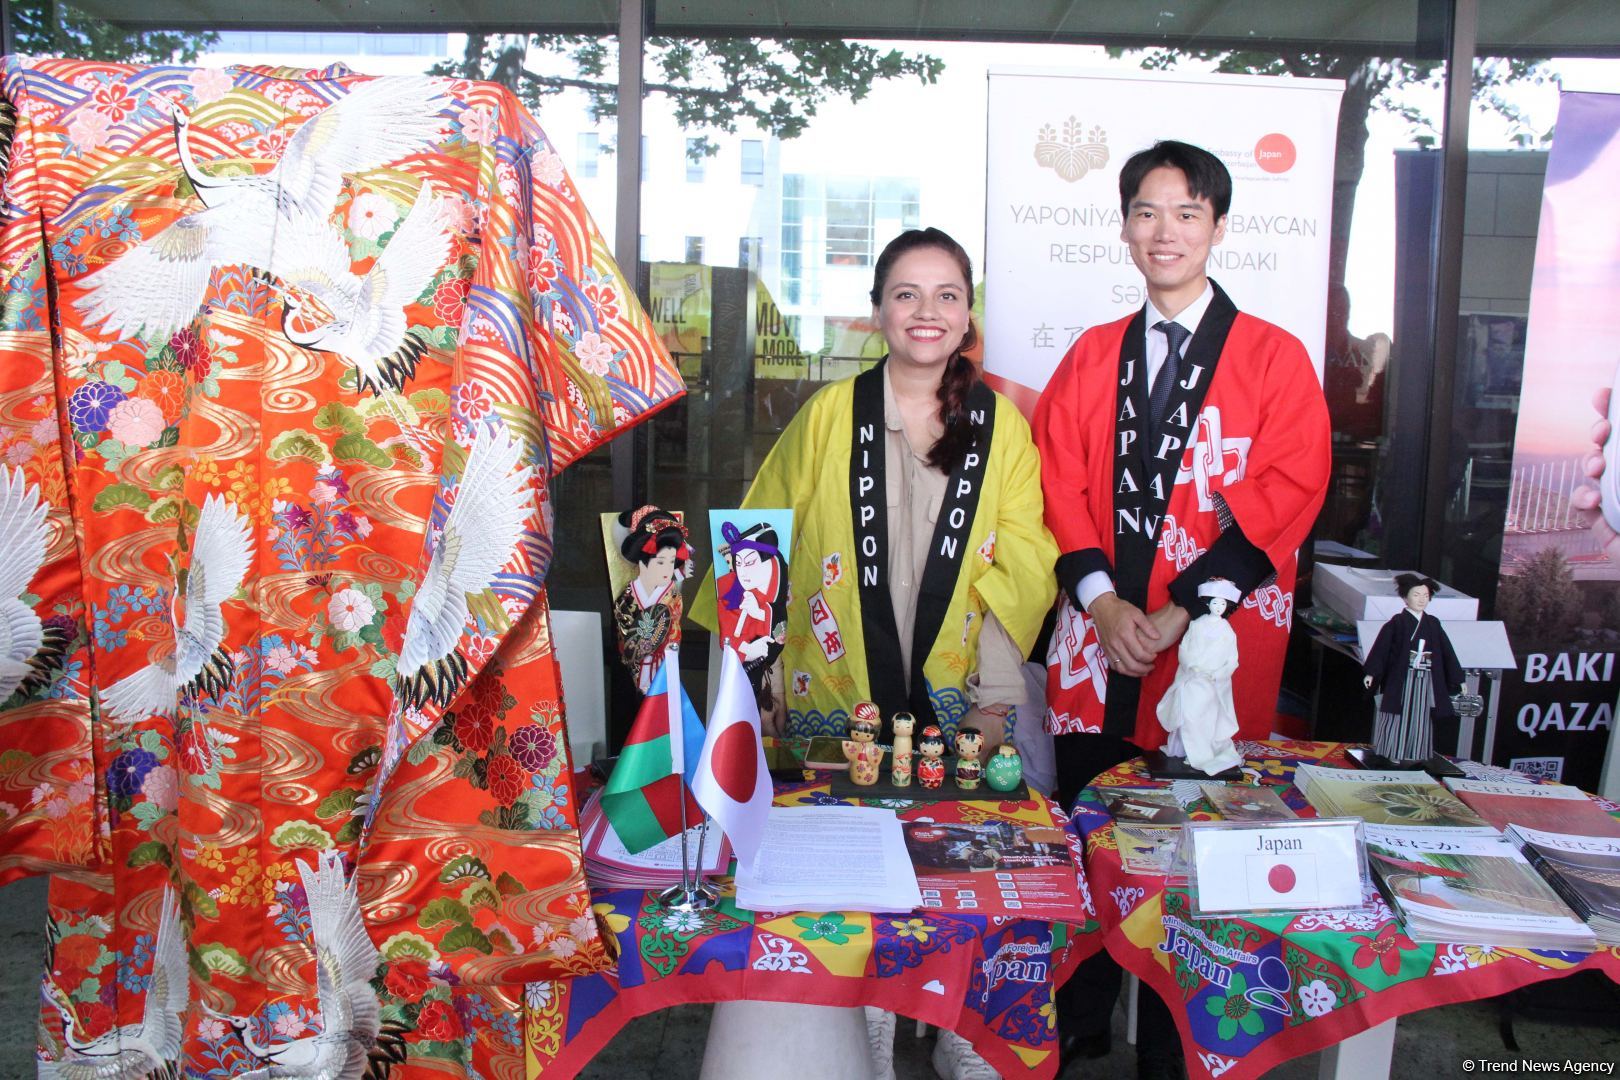 В Университете ADA открылся международный фестиваль с участием посольств 35 стран (ФОТО)